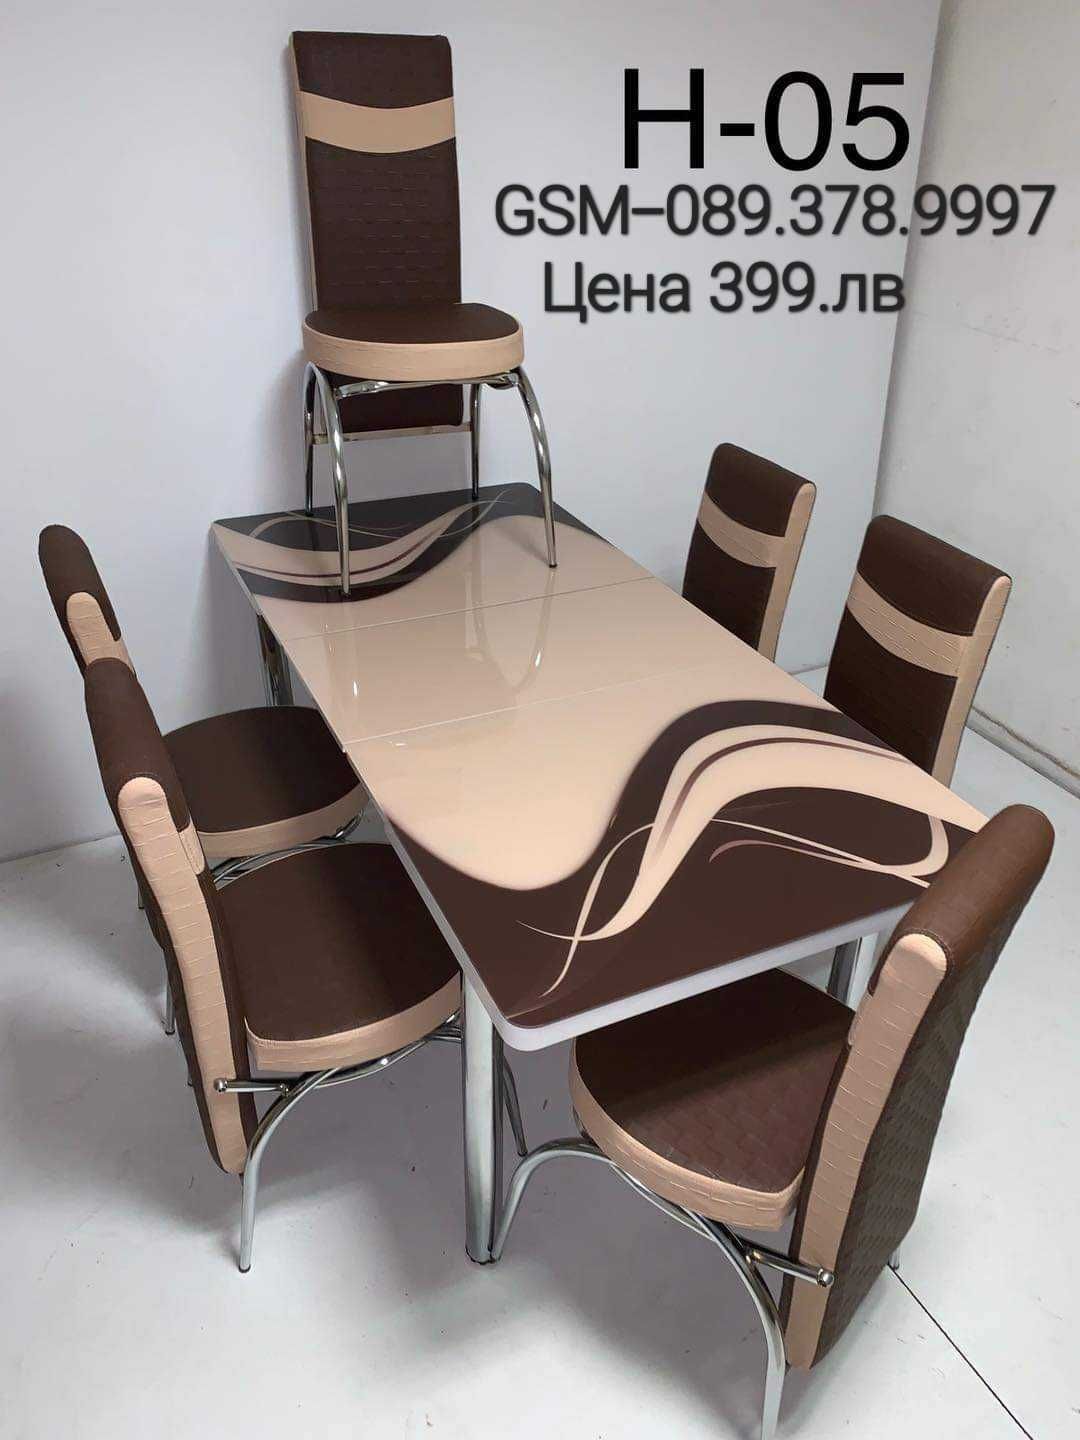 Турски трапезни маси с 6 стола подходящи за всеки дом НОВА Цена 399.лв